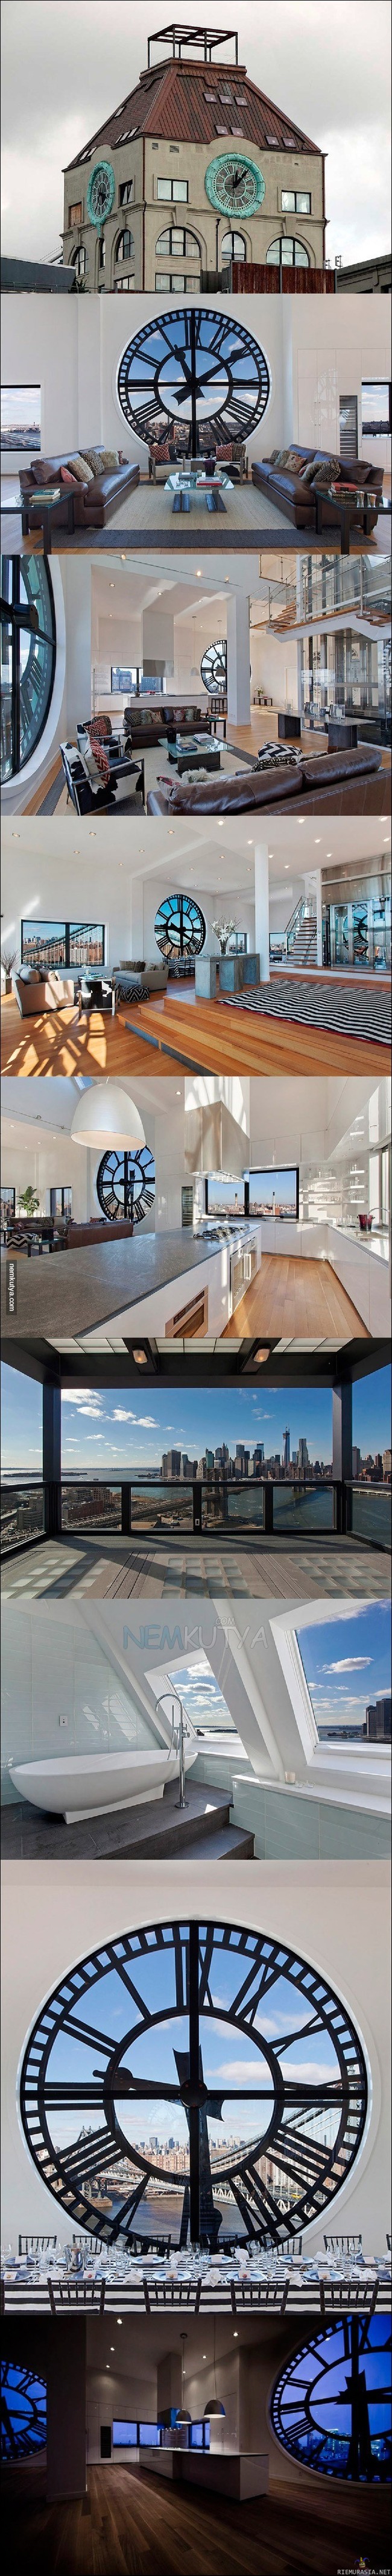 Kellotornista 18 miljoonan luksusasunto - Insane penthouse in Brooklyn&#039;s clock tower for $18M
http://www.businessinsider.com/clock-tower-penthouse-for-sale-in-dumbo-2013-3?op=1